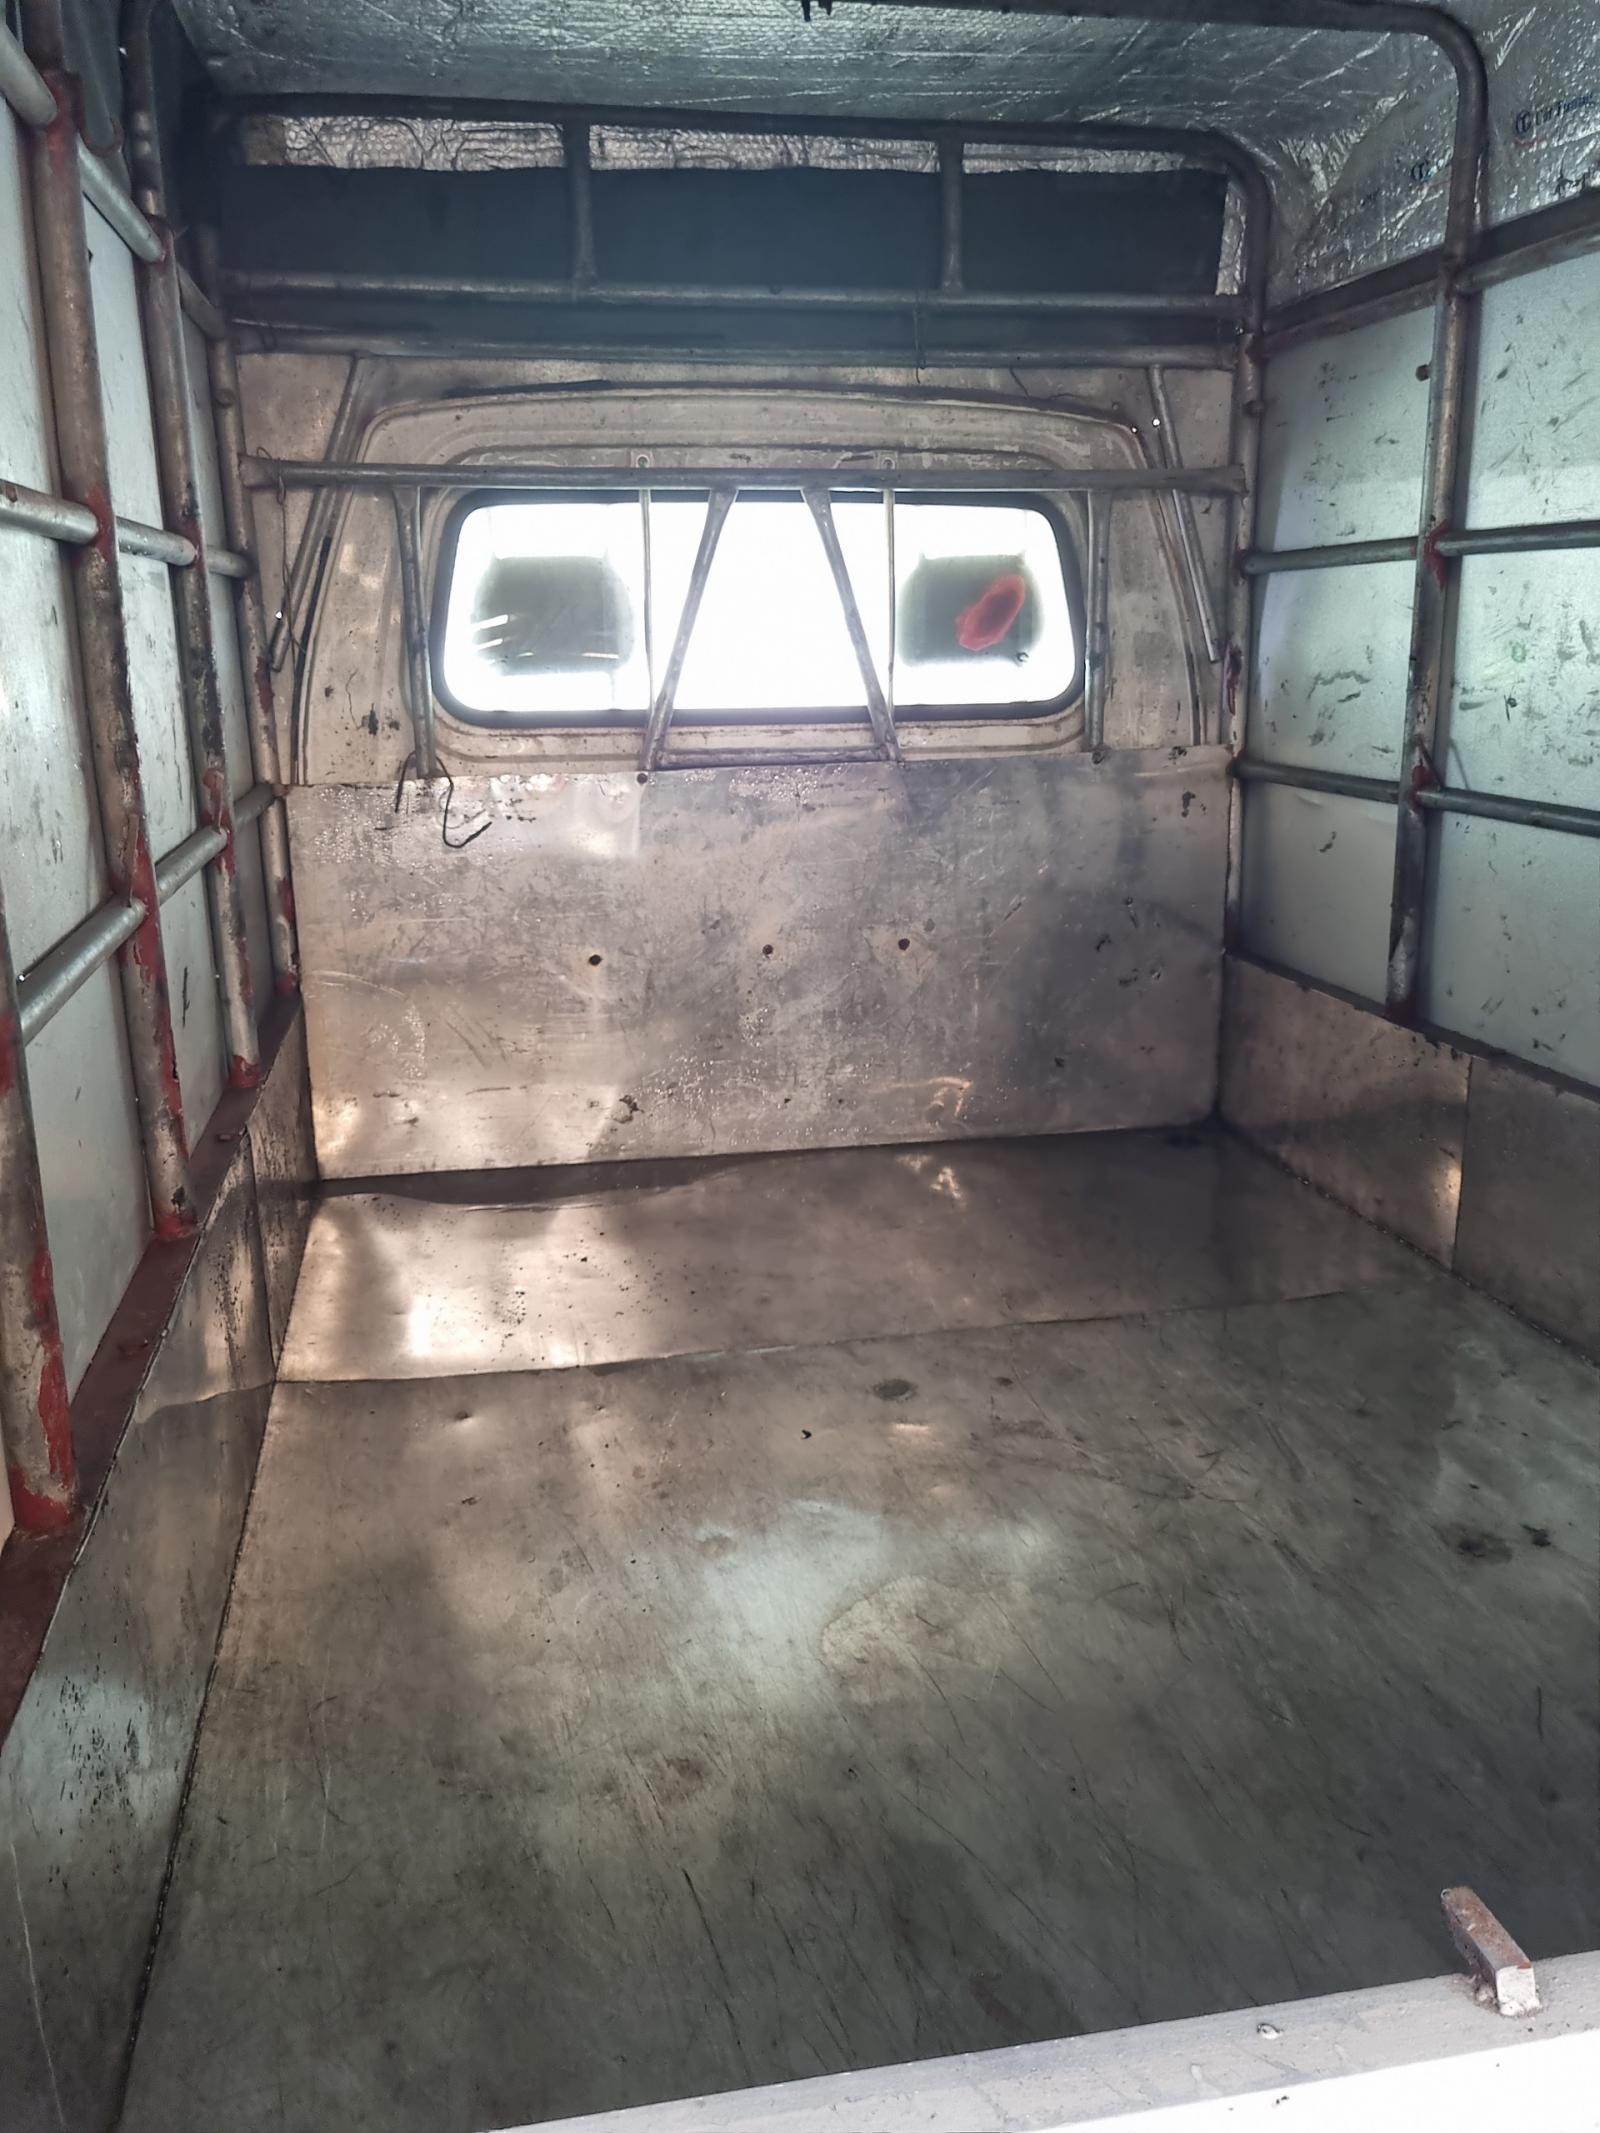 Bán xe tải 5 tạ cũ thùng bạt Suzuki tại Hải Phòng